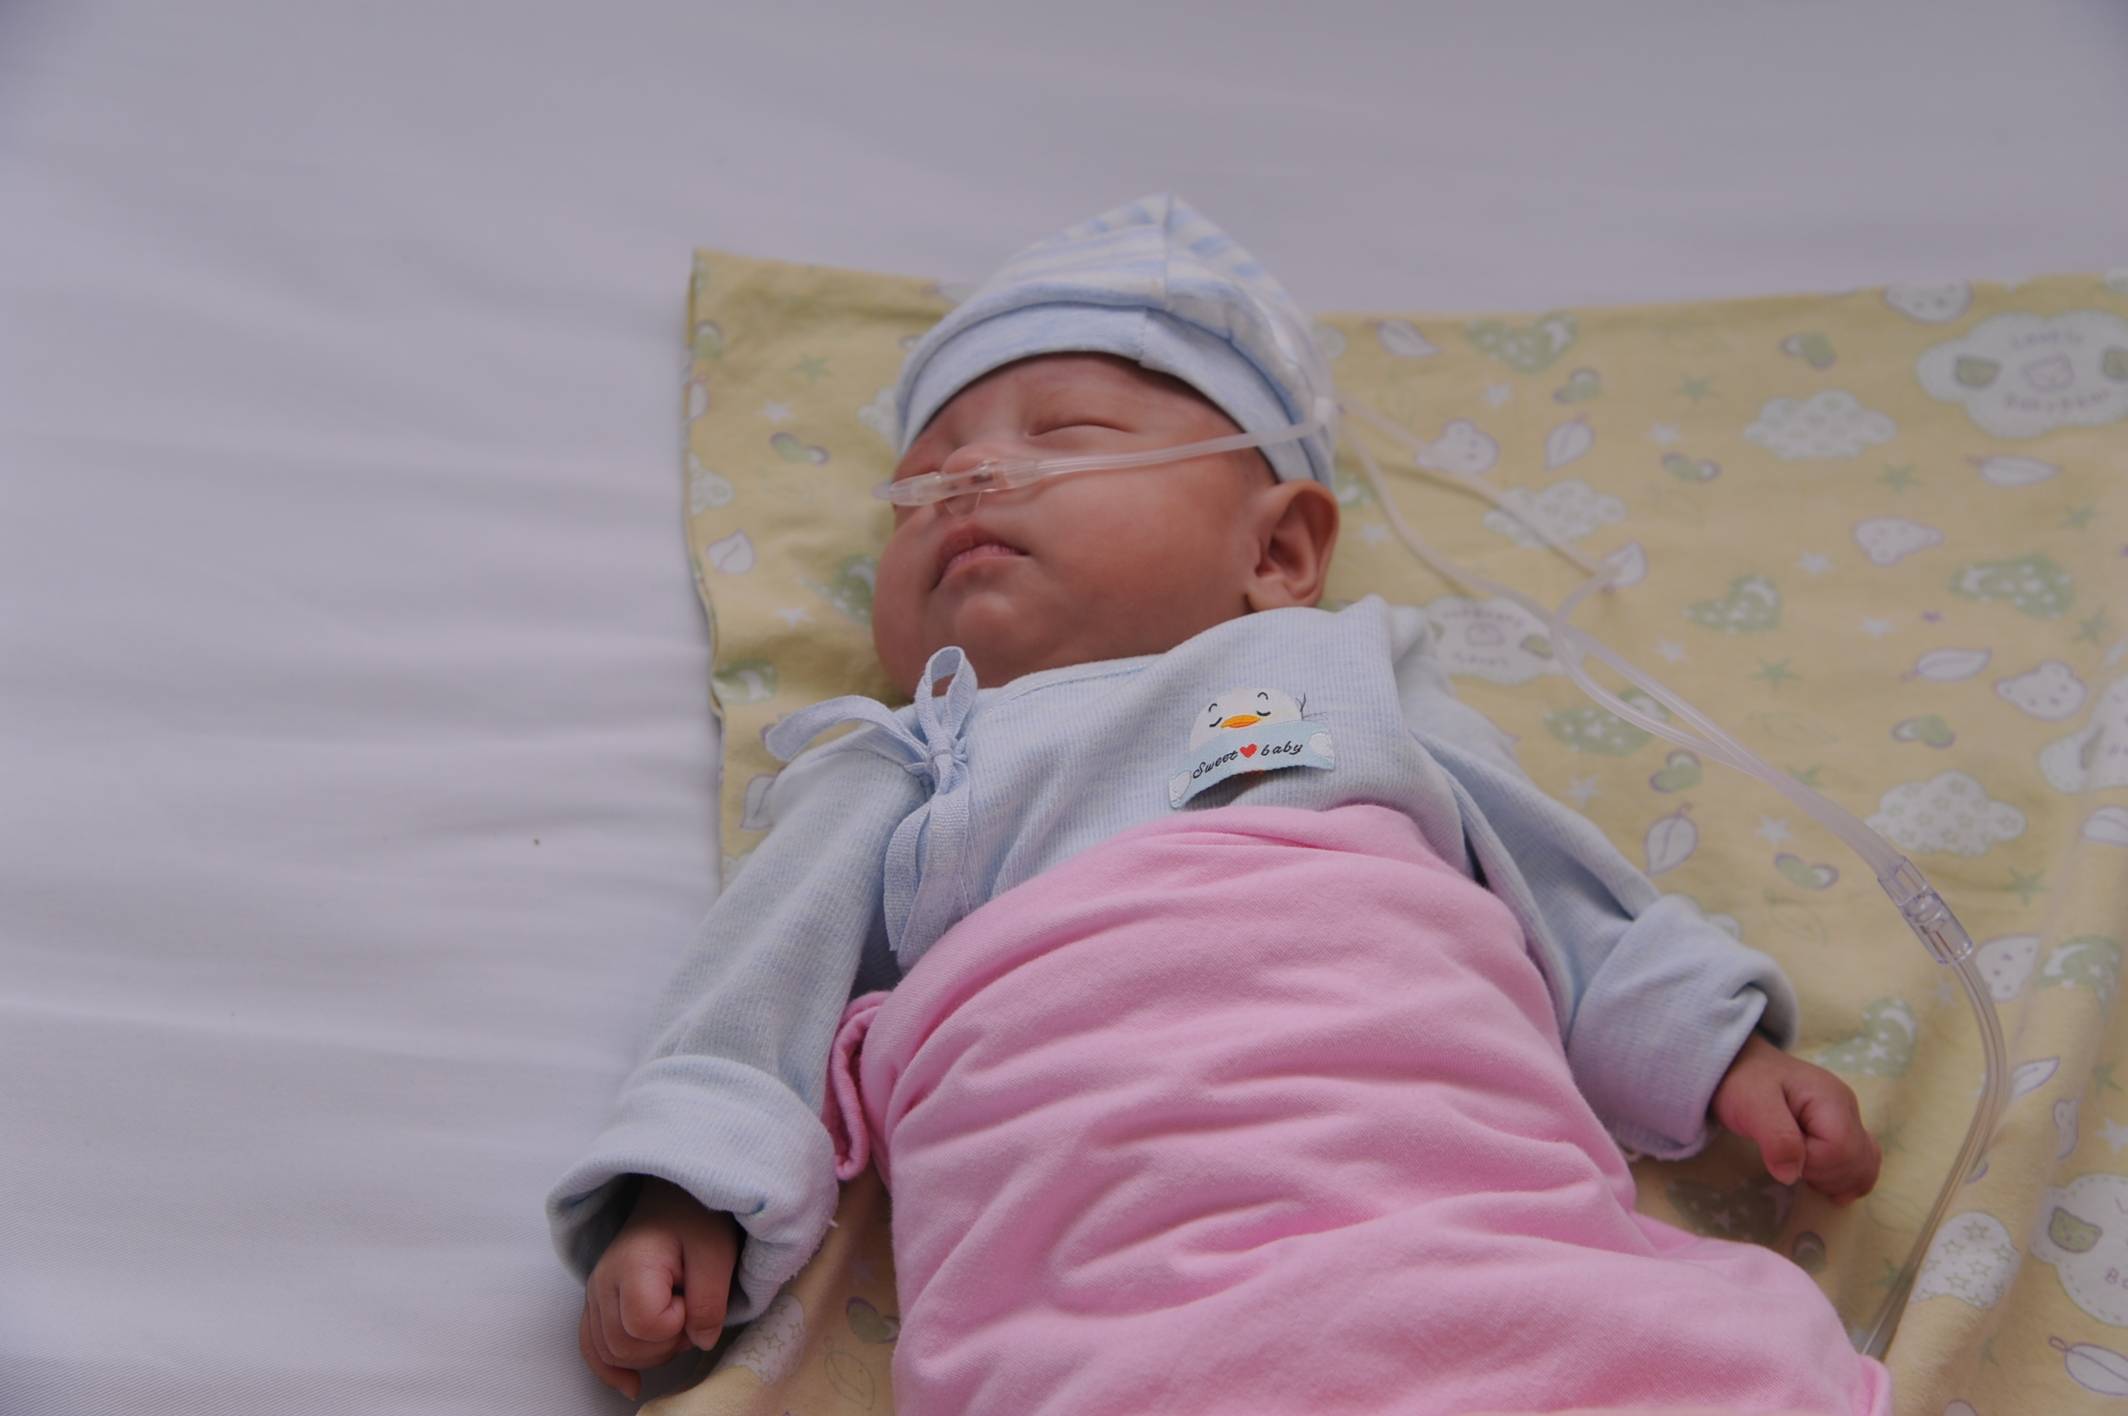 24周早产宝宝出院:出生时仅700克,连闯五道"生死关"